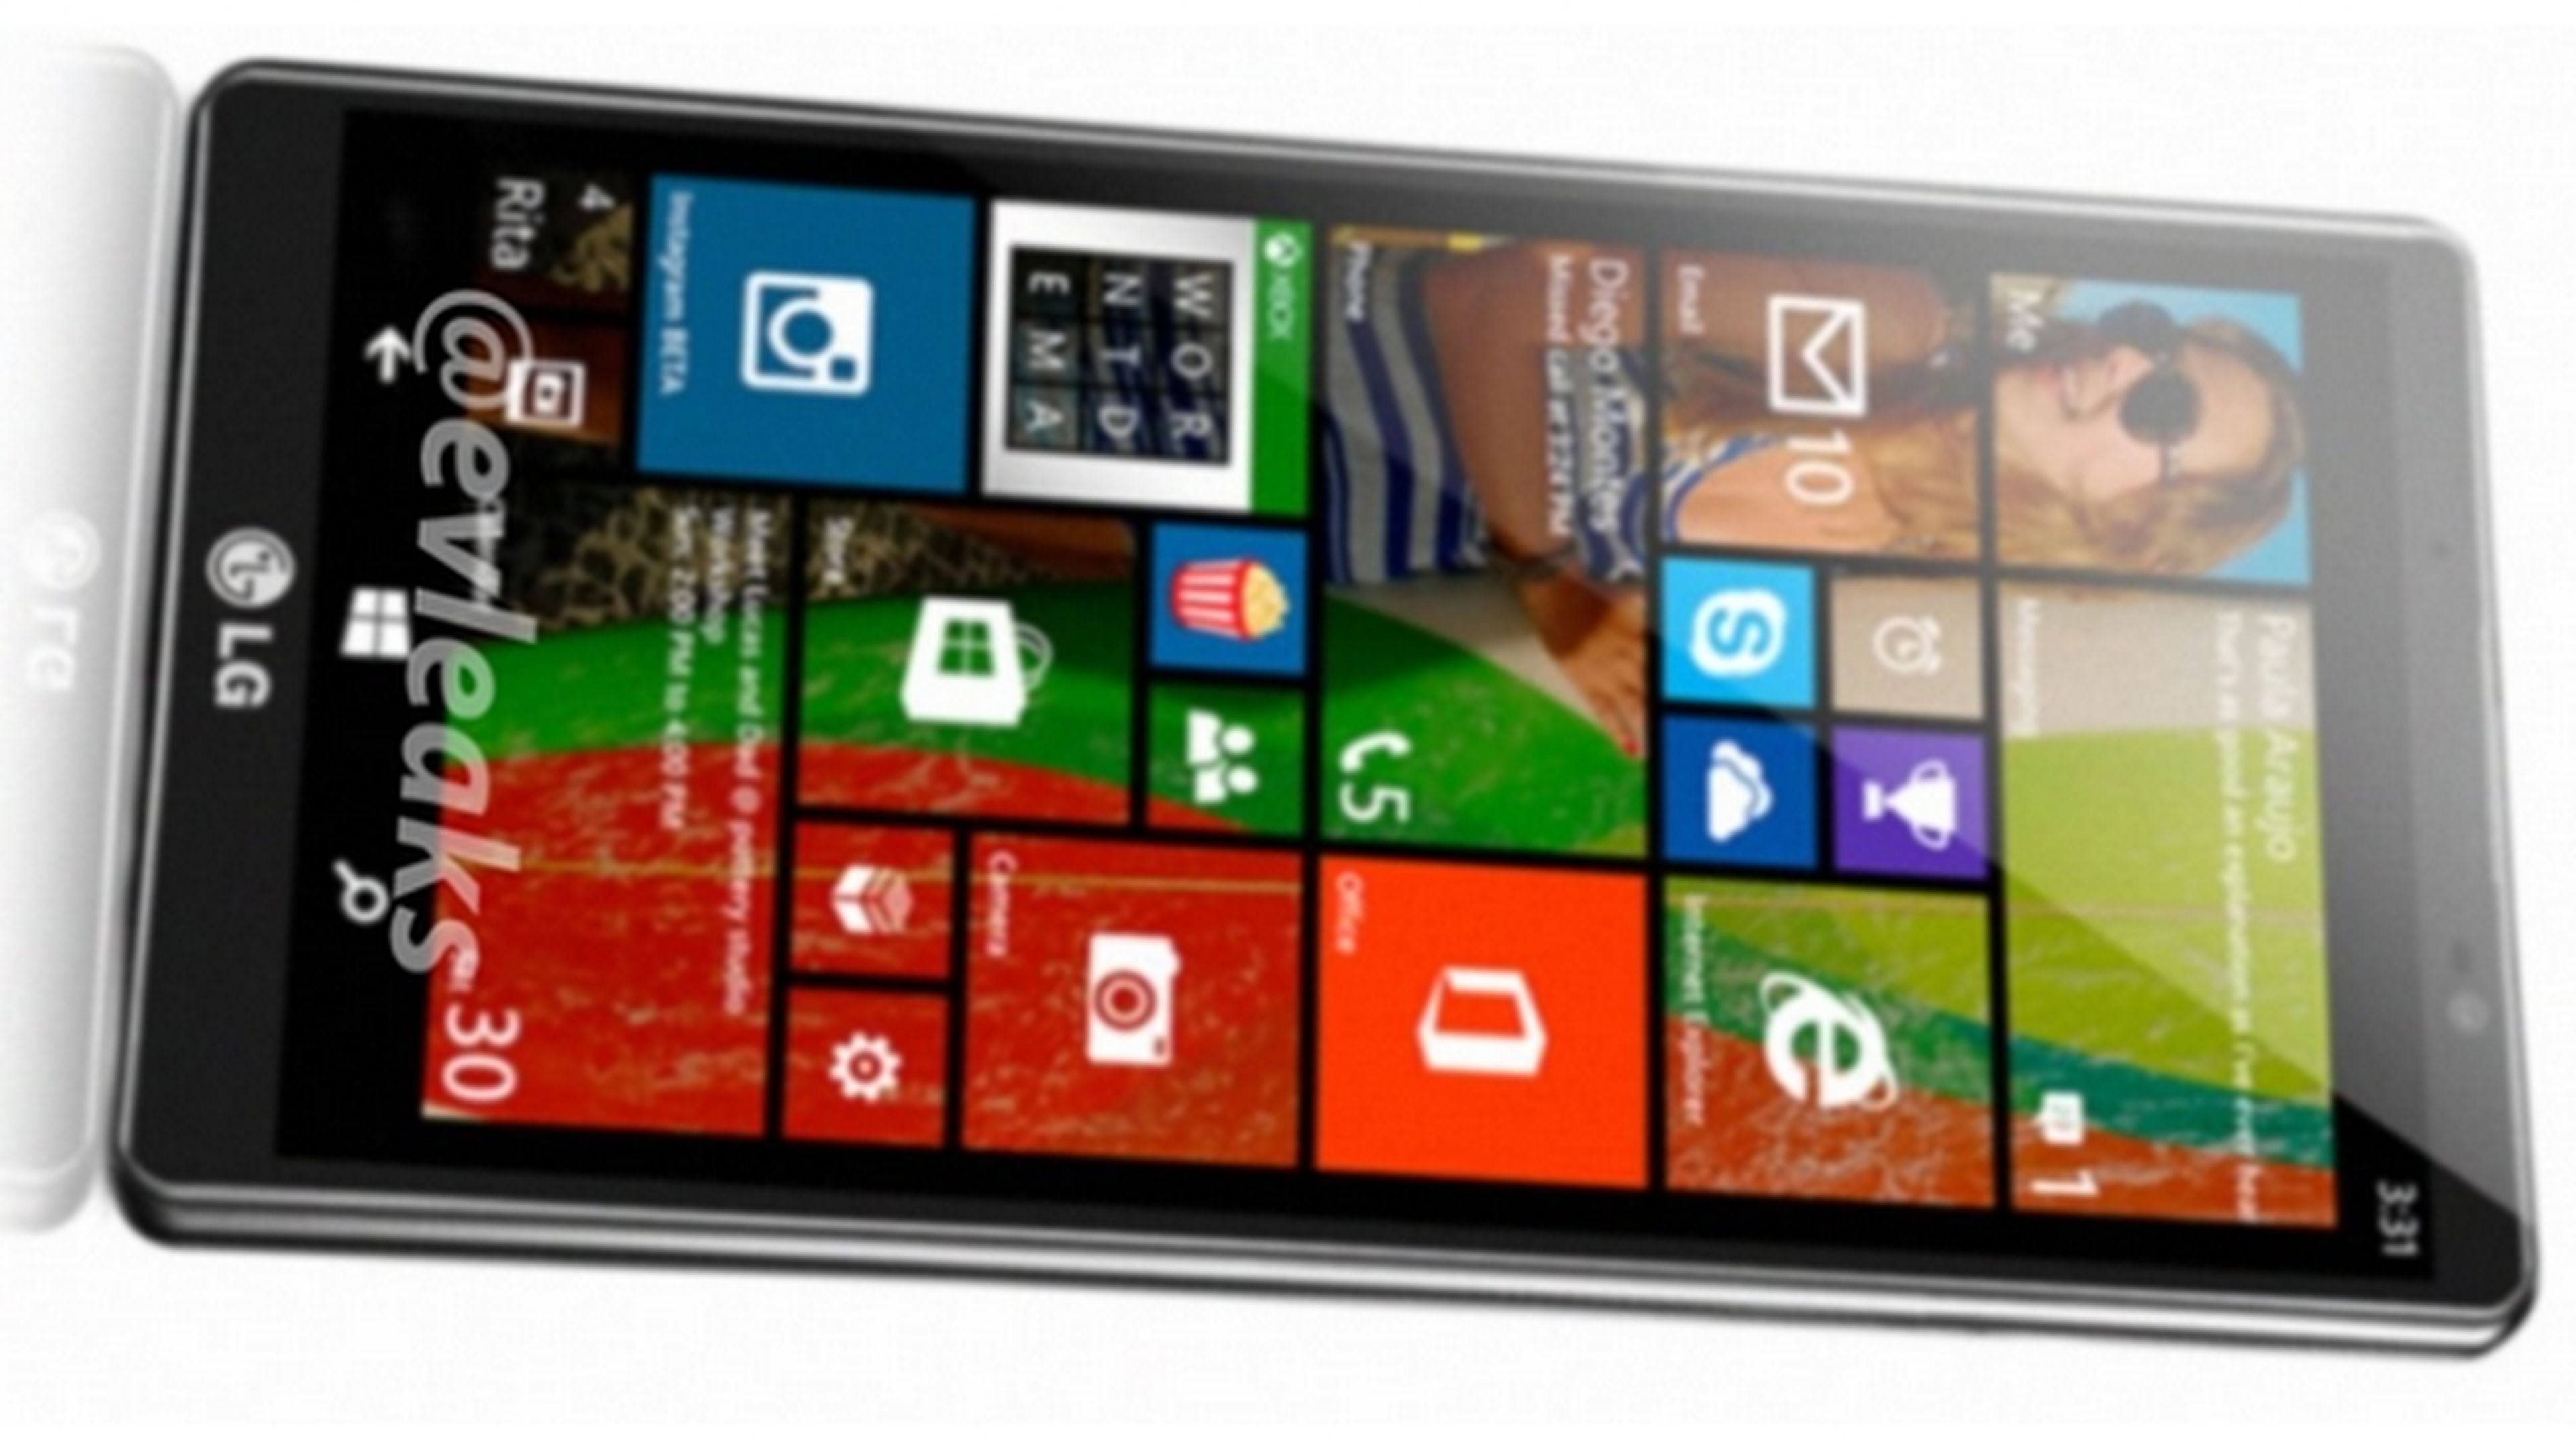 Se desvela el LG Uni8, el nuevo smartphone de LG con Windows Phone 8.1.